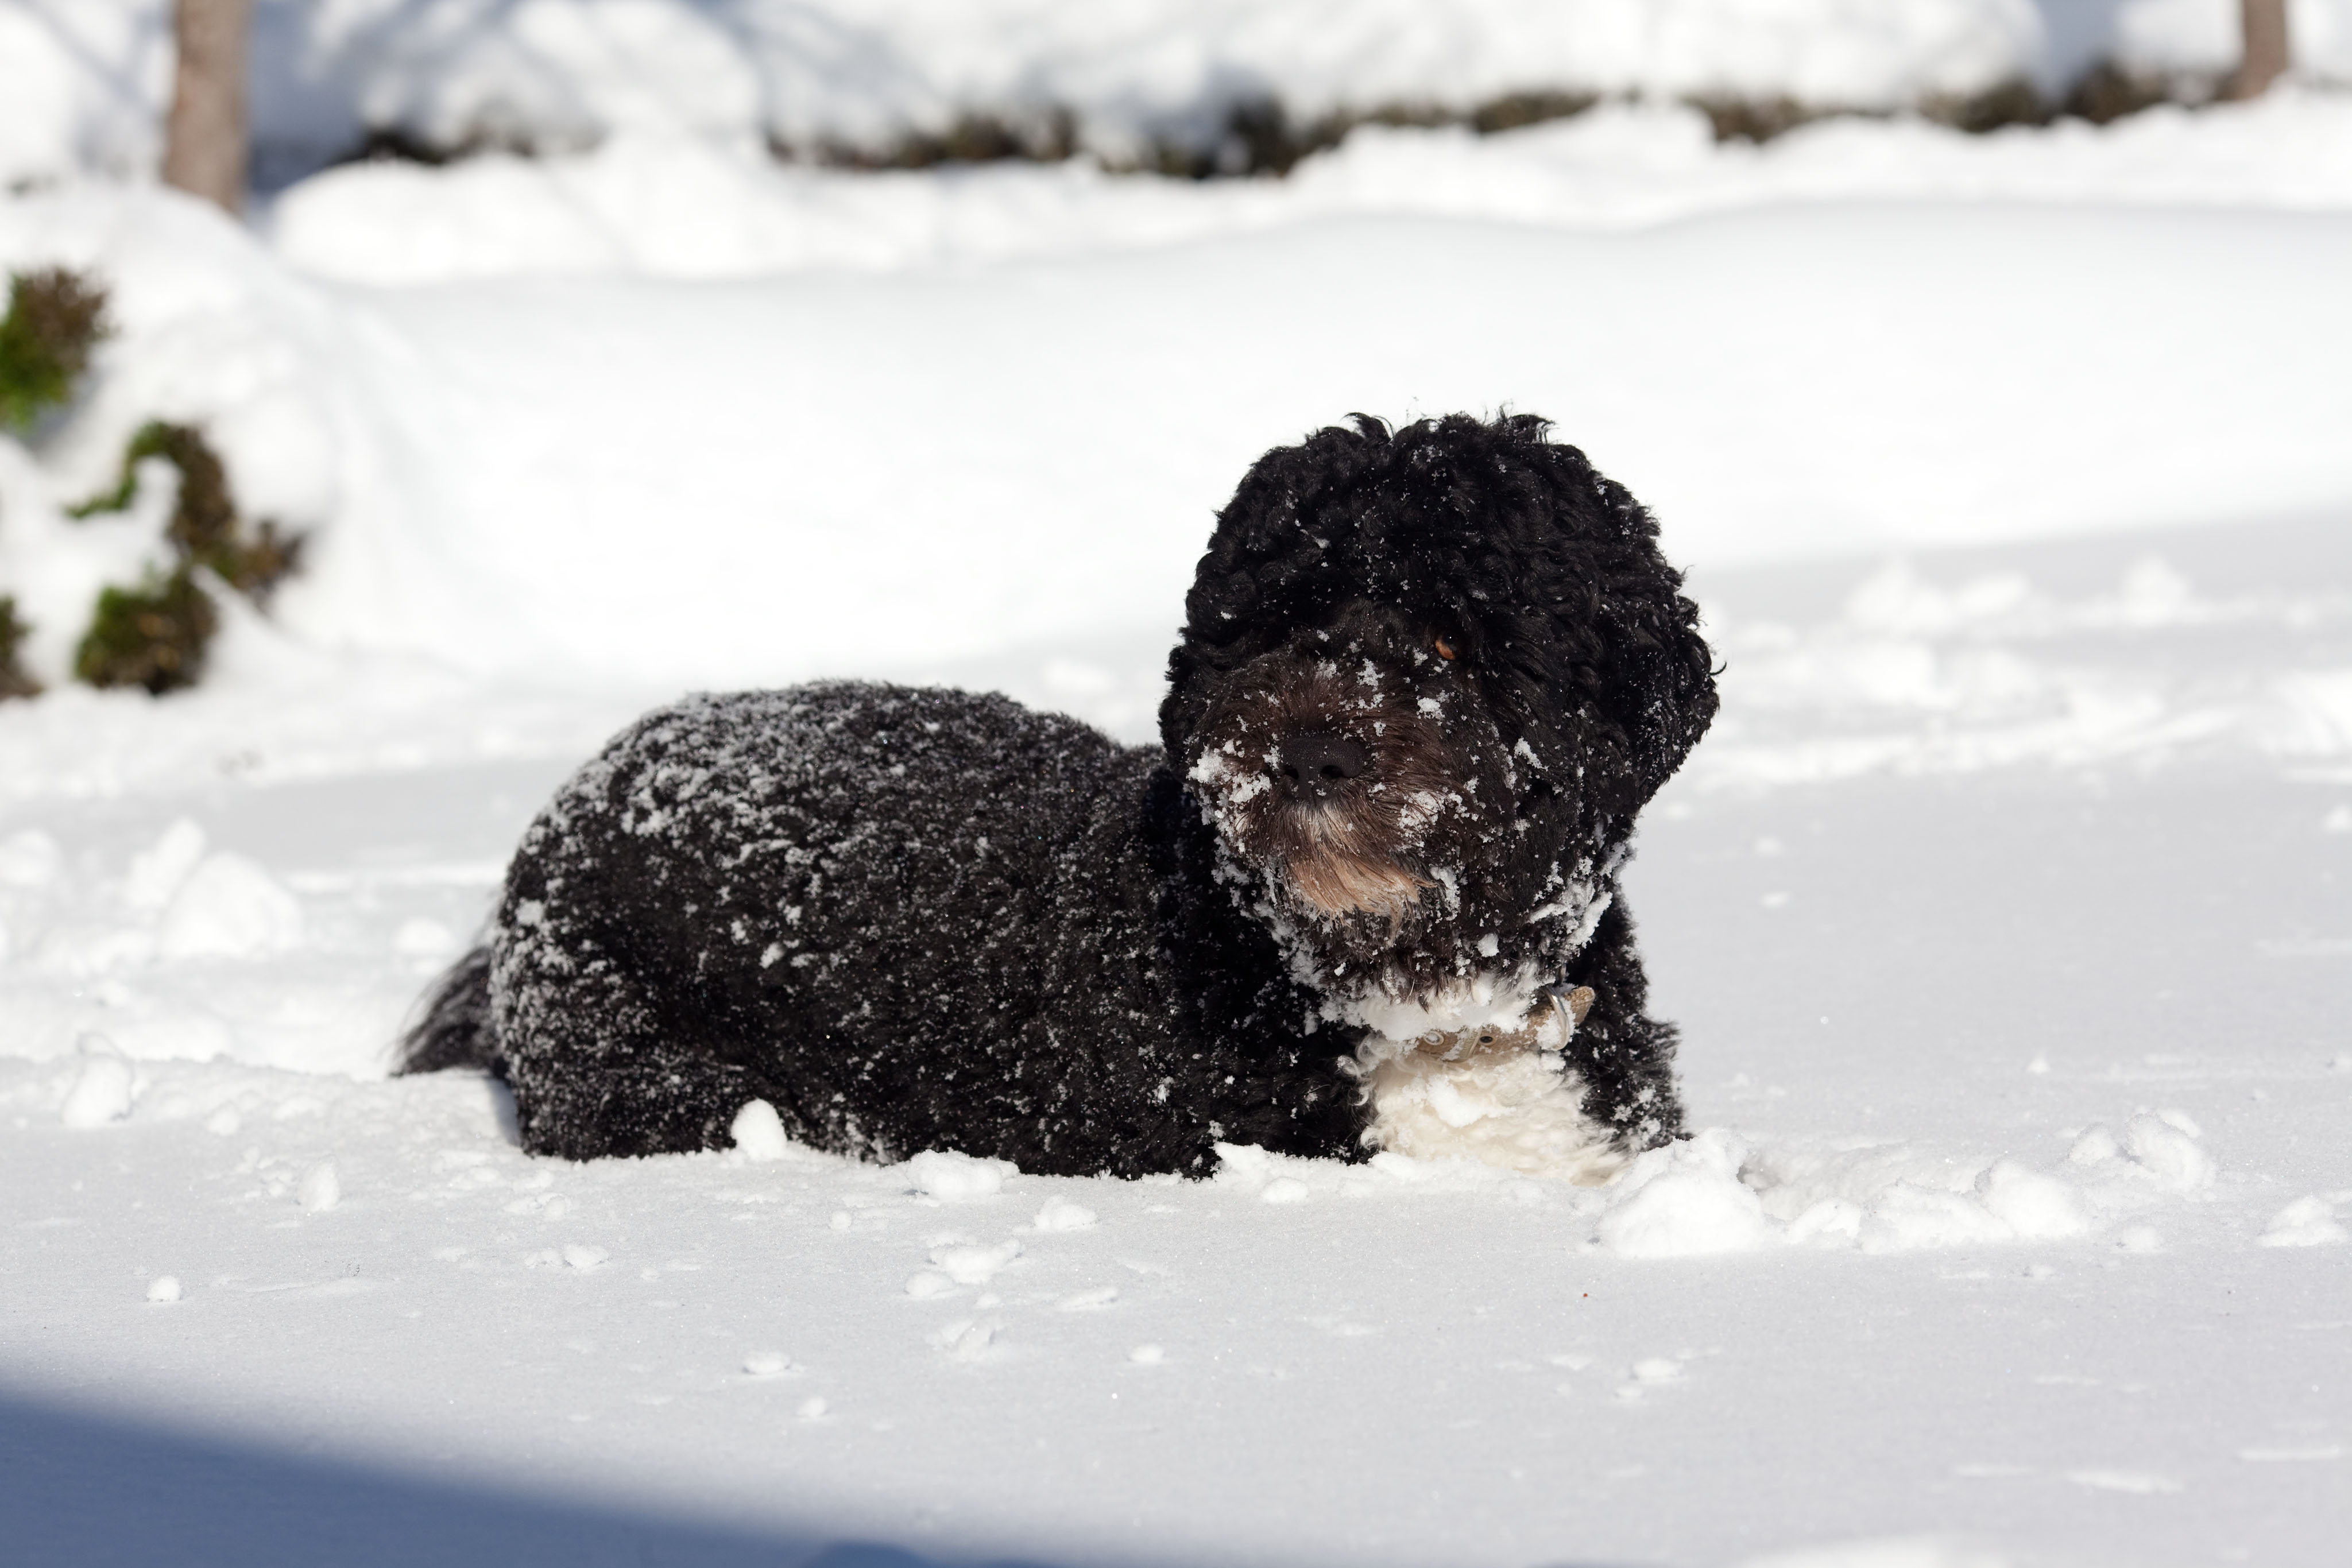 Bo in the snow